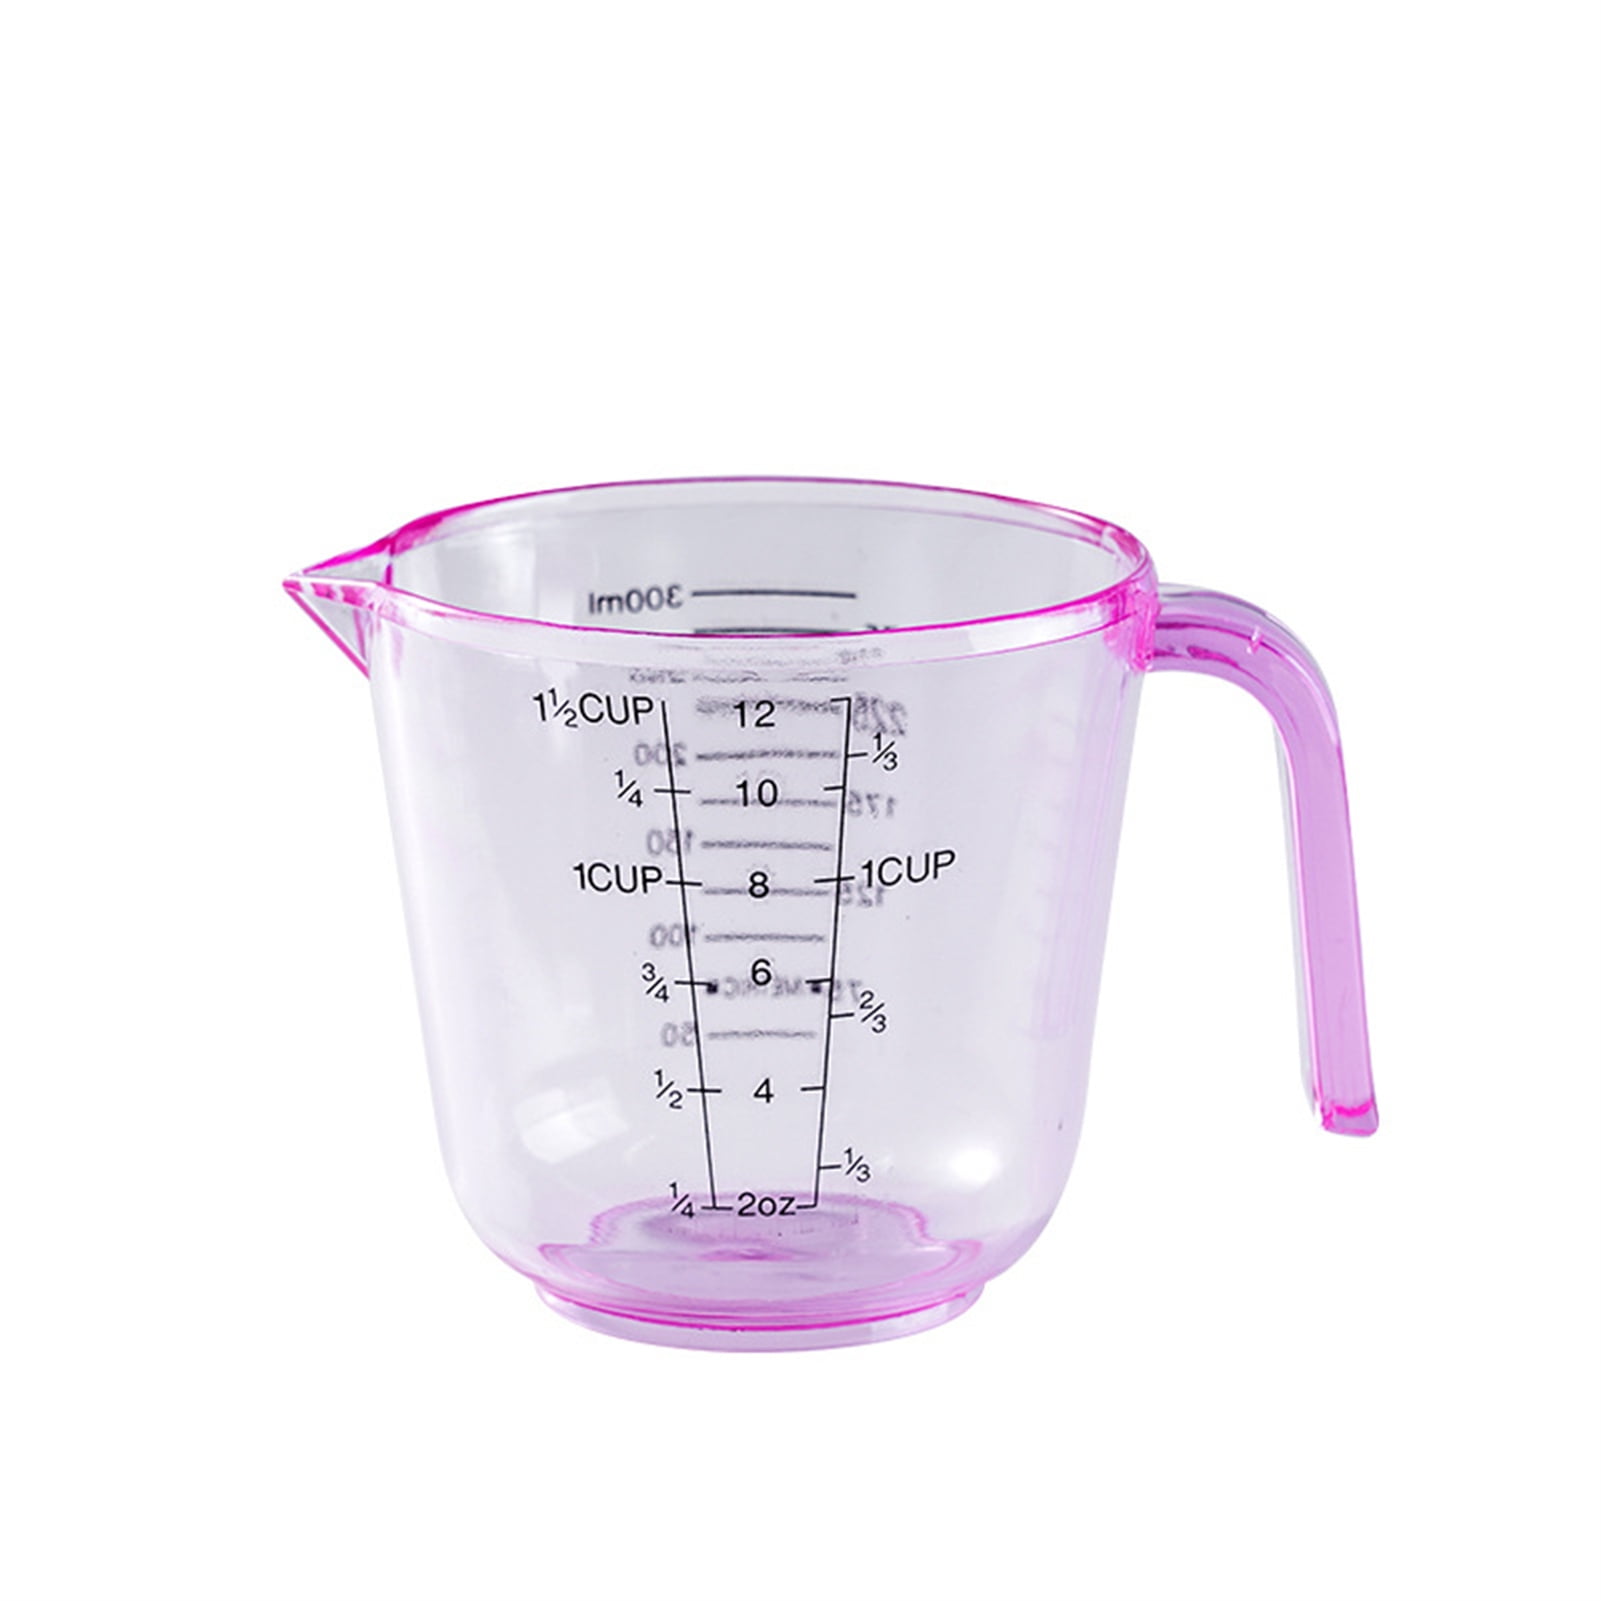 1-cup Silicone Measuring Cup - Flexible - Restaurantware